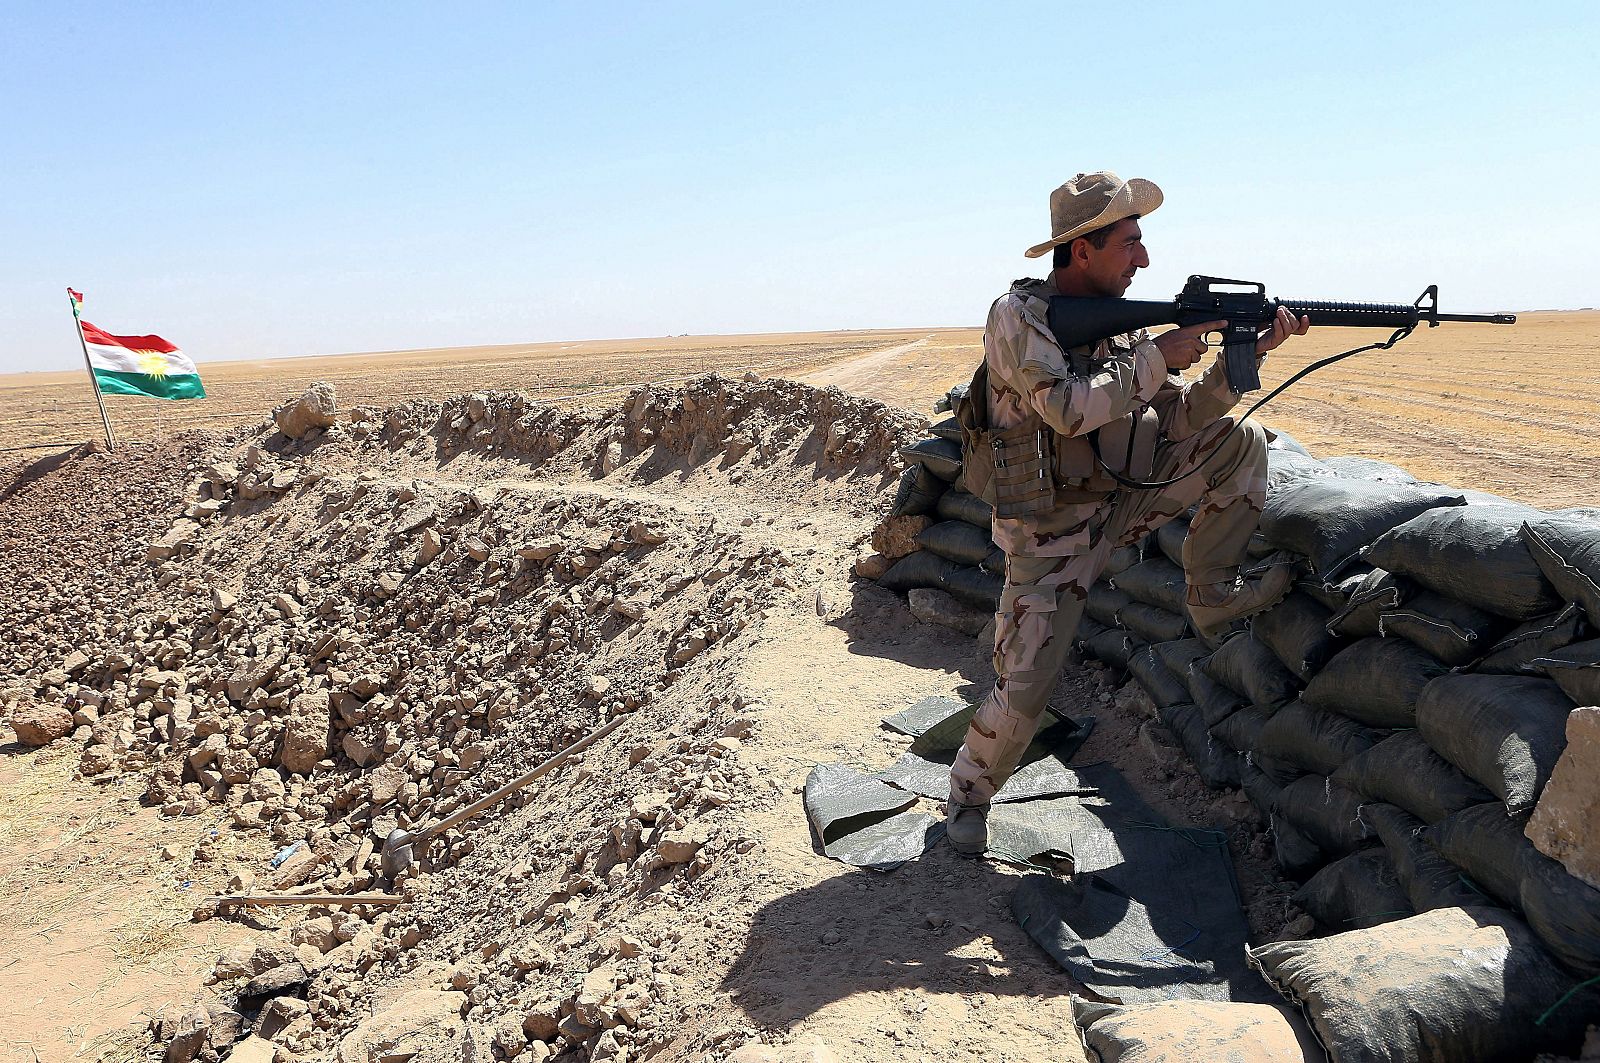 Un soldado de las fuerzas kurdas "peshmergas" monta guardia al norte de Irak en una imagen de archivo.